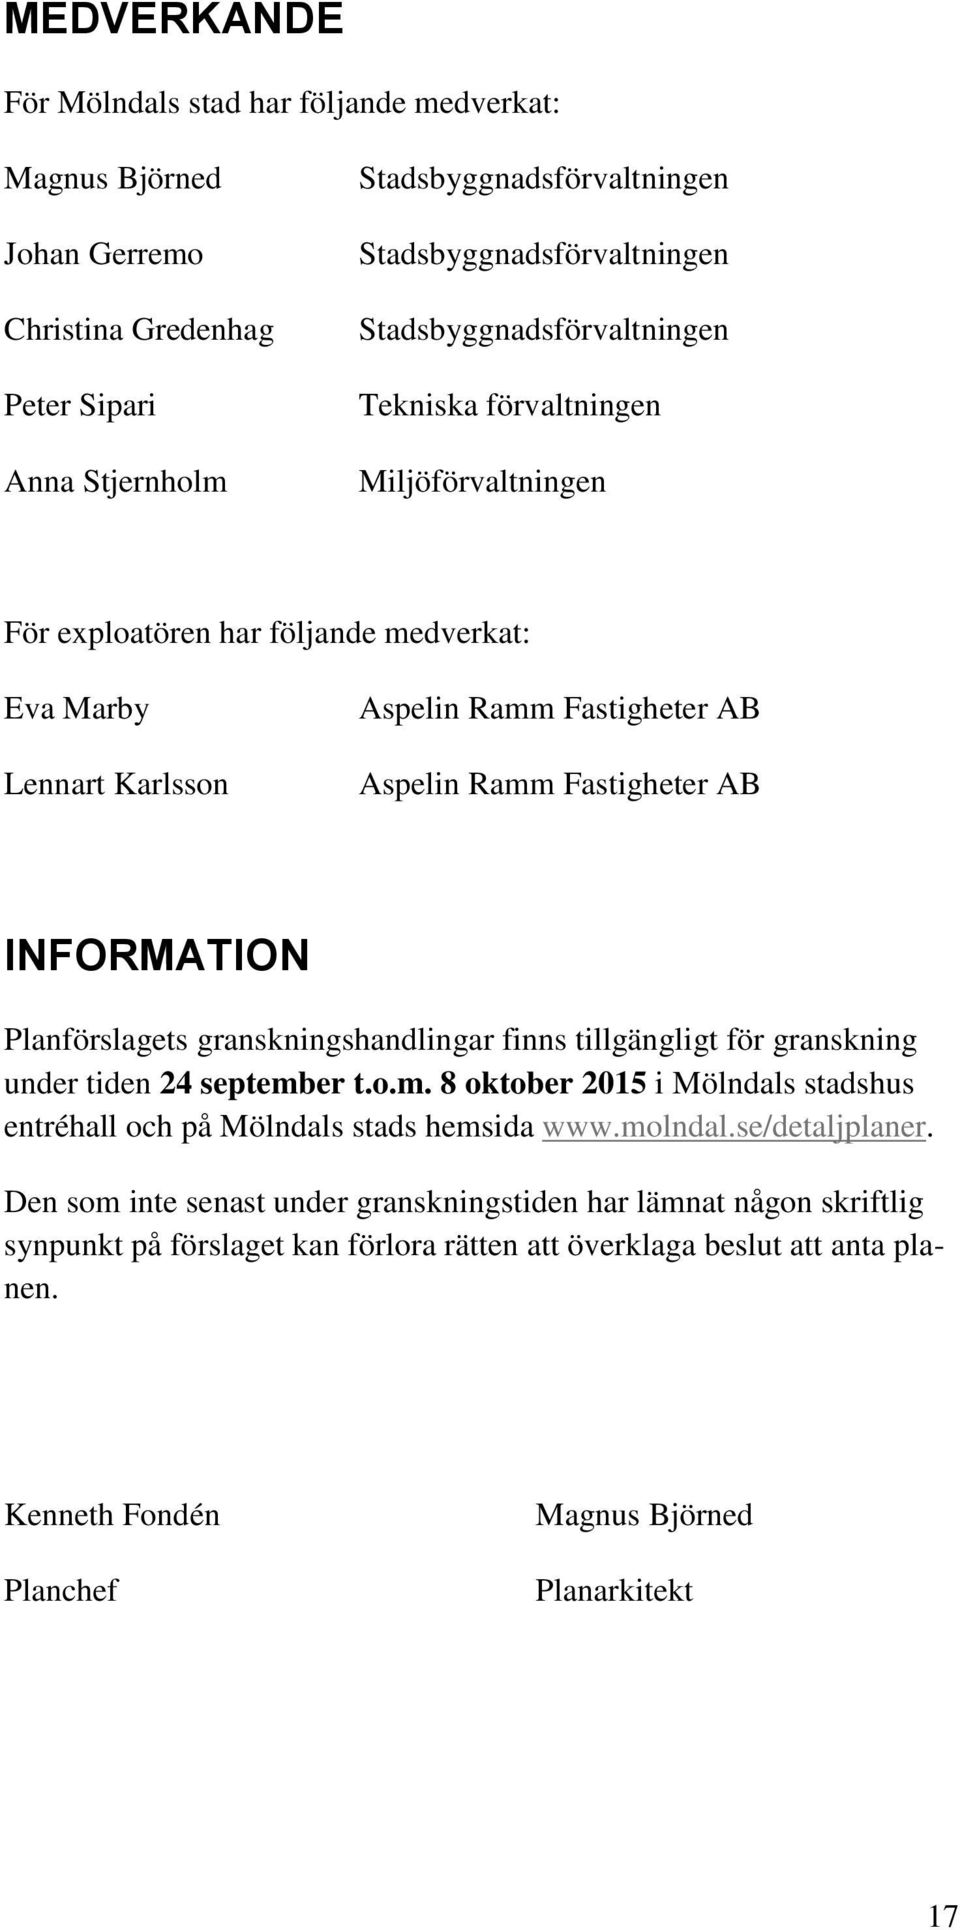 INFORMATION Planförslagets granskningshandlingar finns tillgängligt för granskning under tiden 24 september t.o.m. 8 oktober 2015 i Mölndals stadshus entréhall och på Mölndals stads hemsida www.